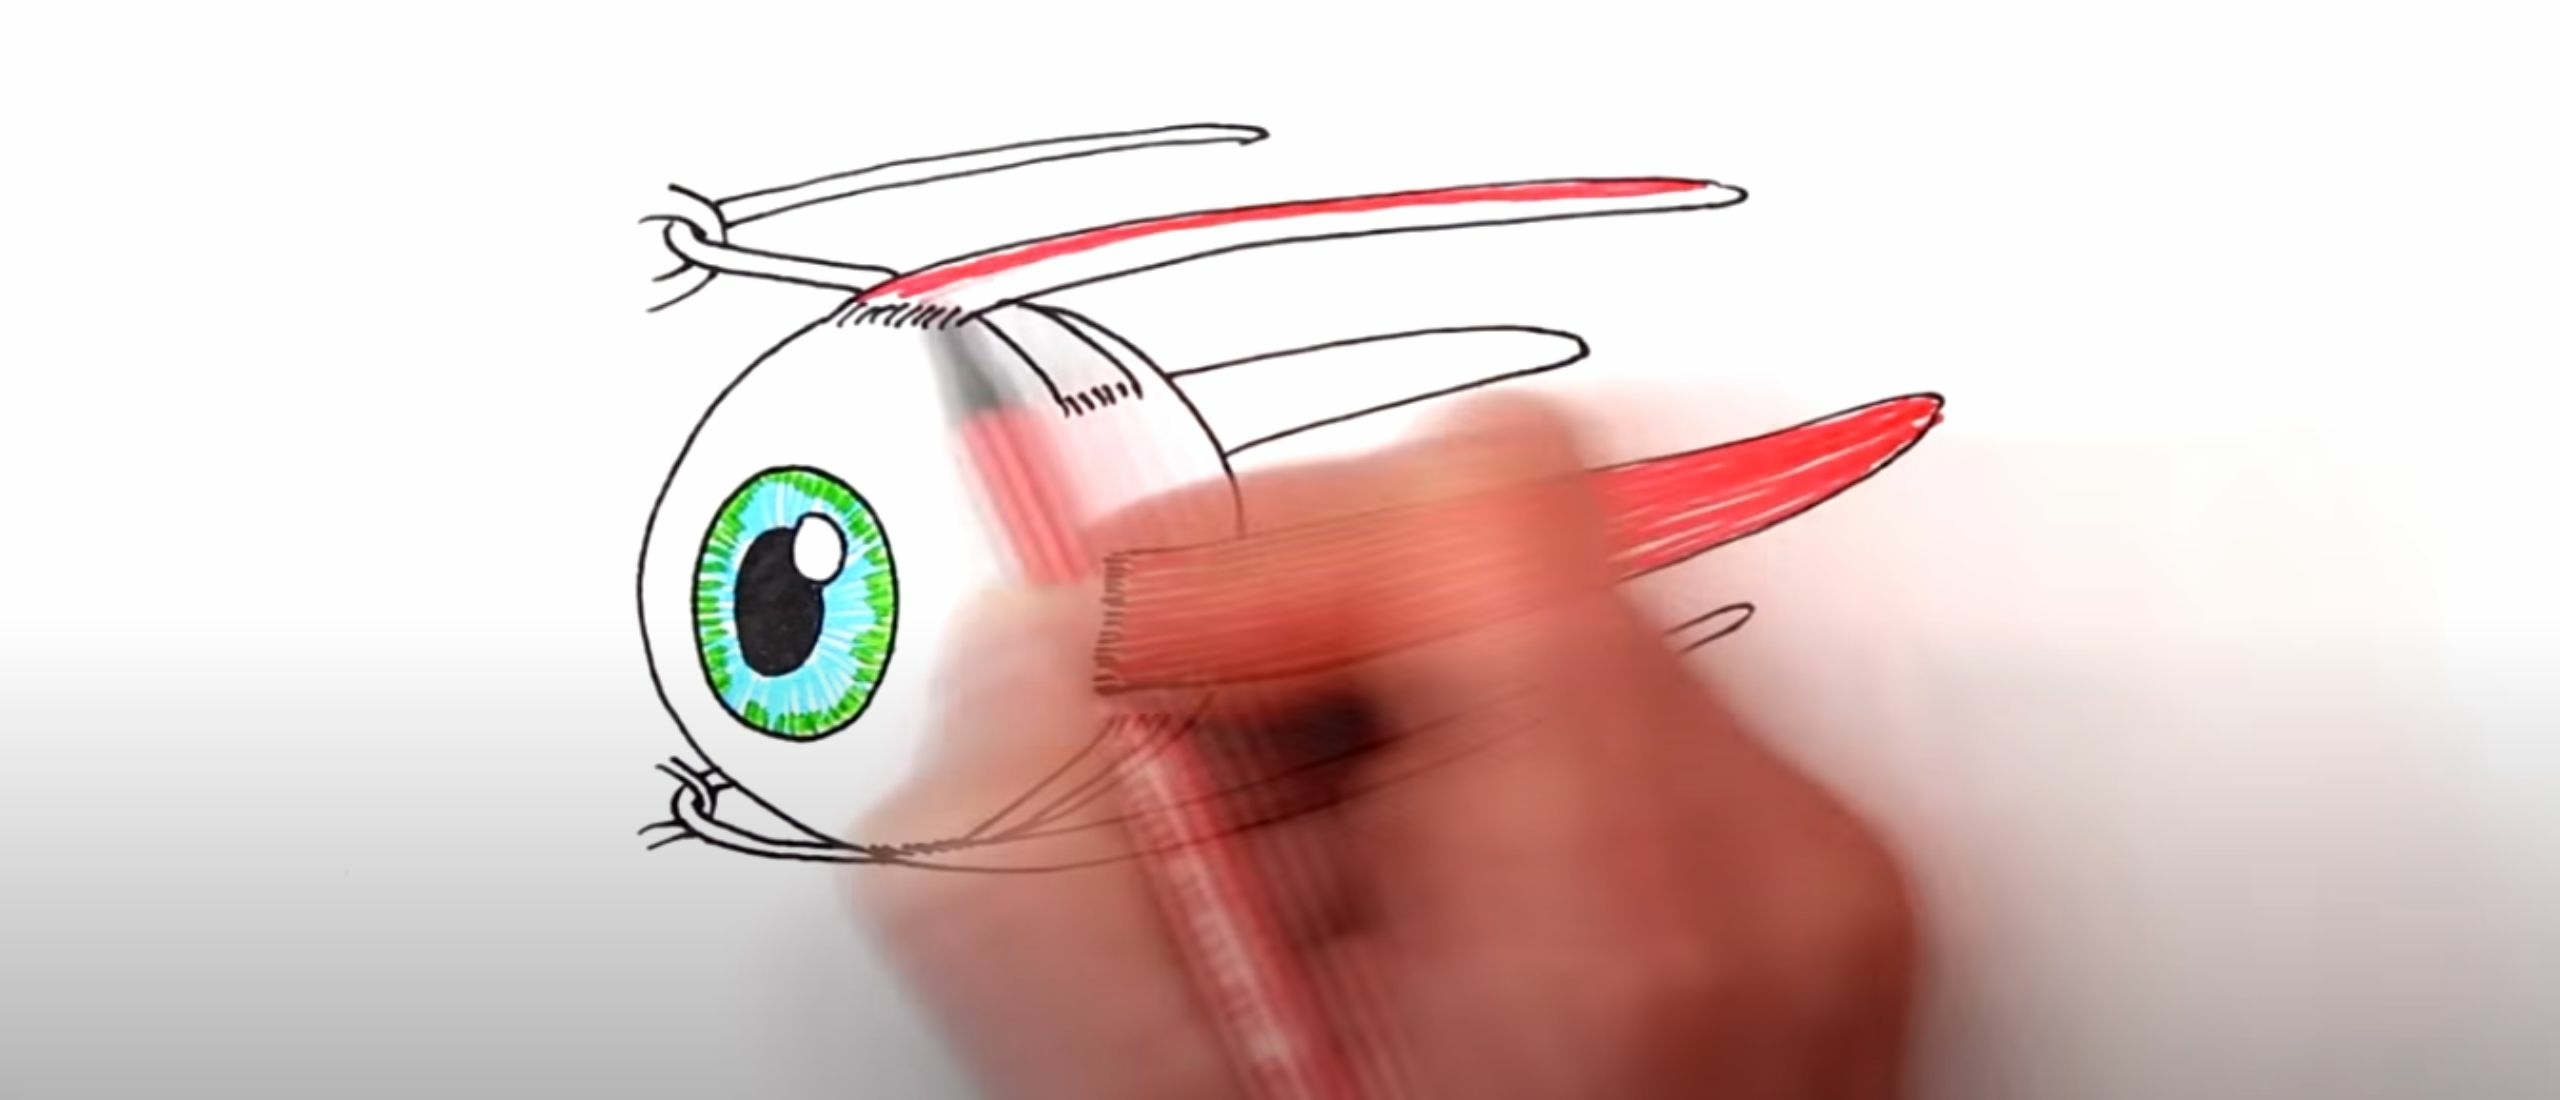 Leuk filmpje: Invloed van oogspieren op het zicht